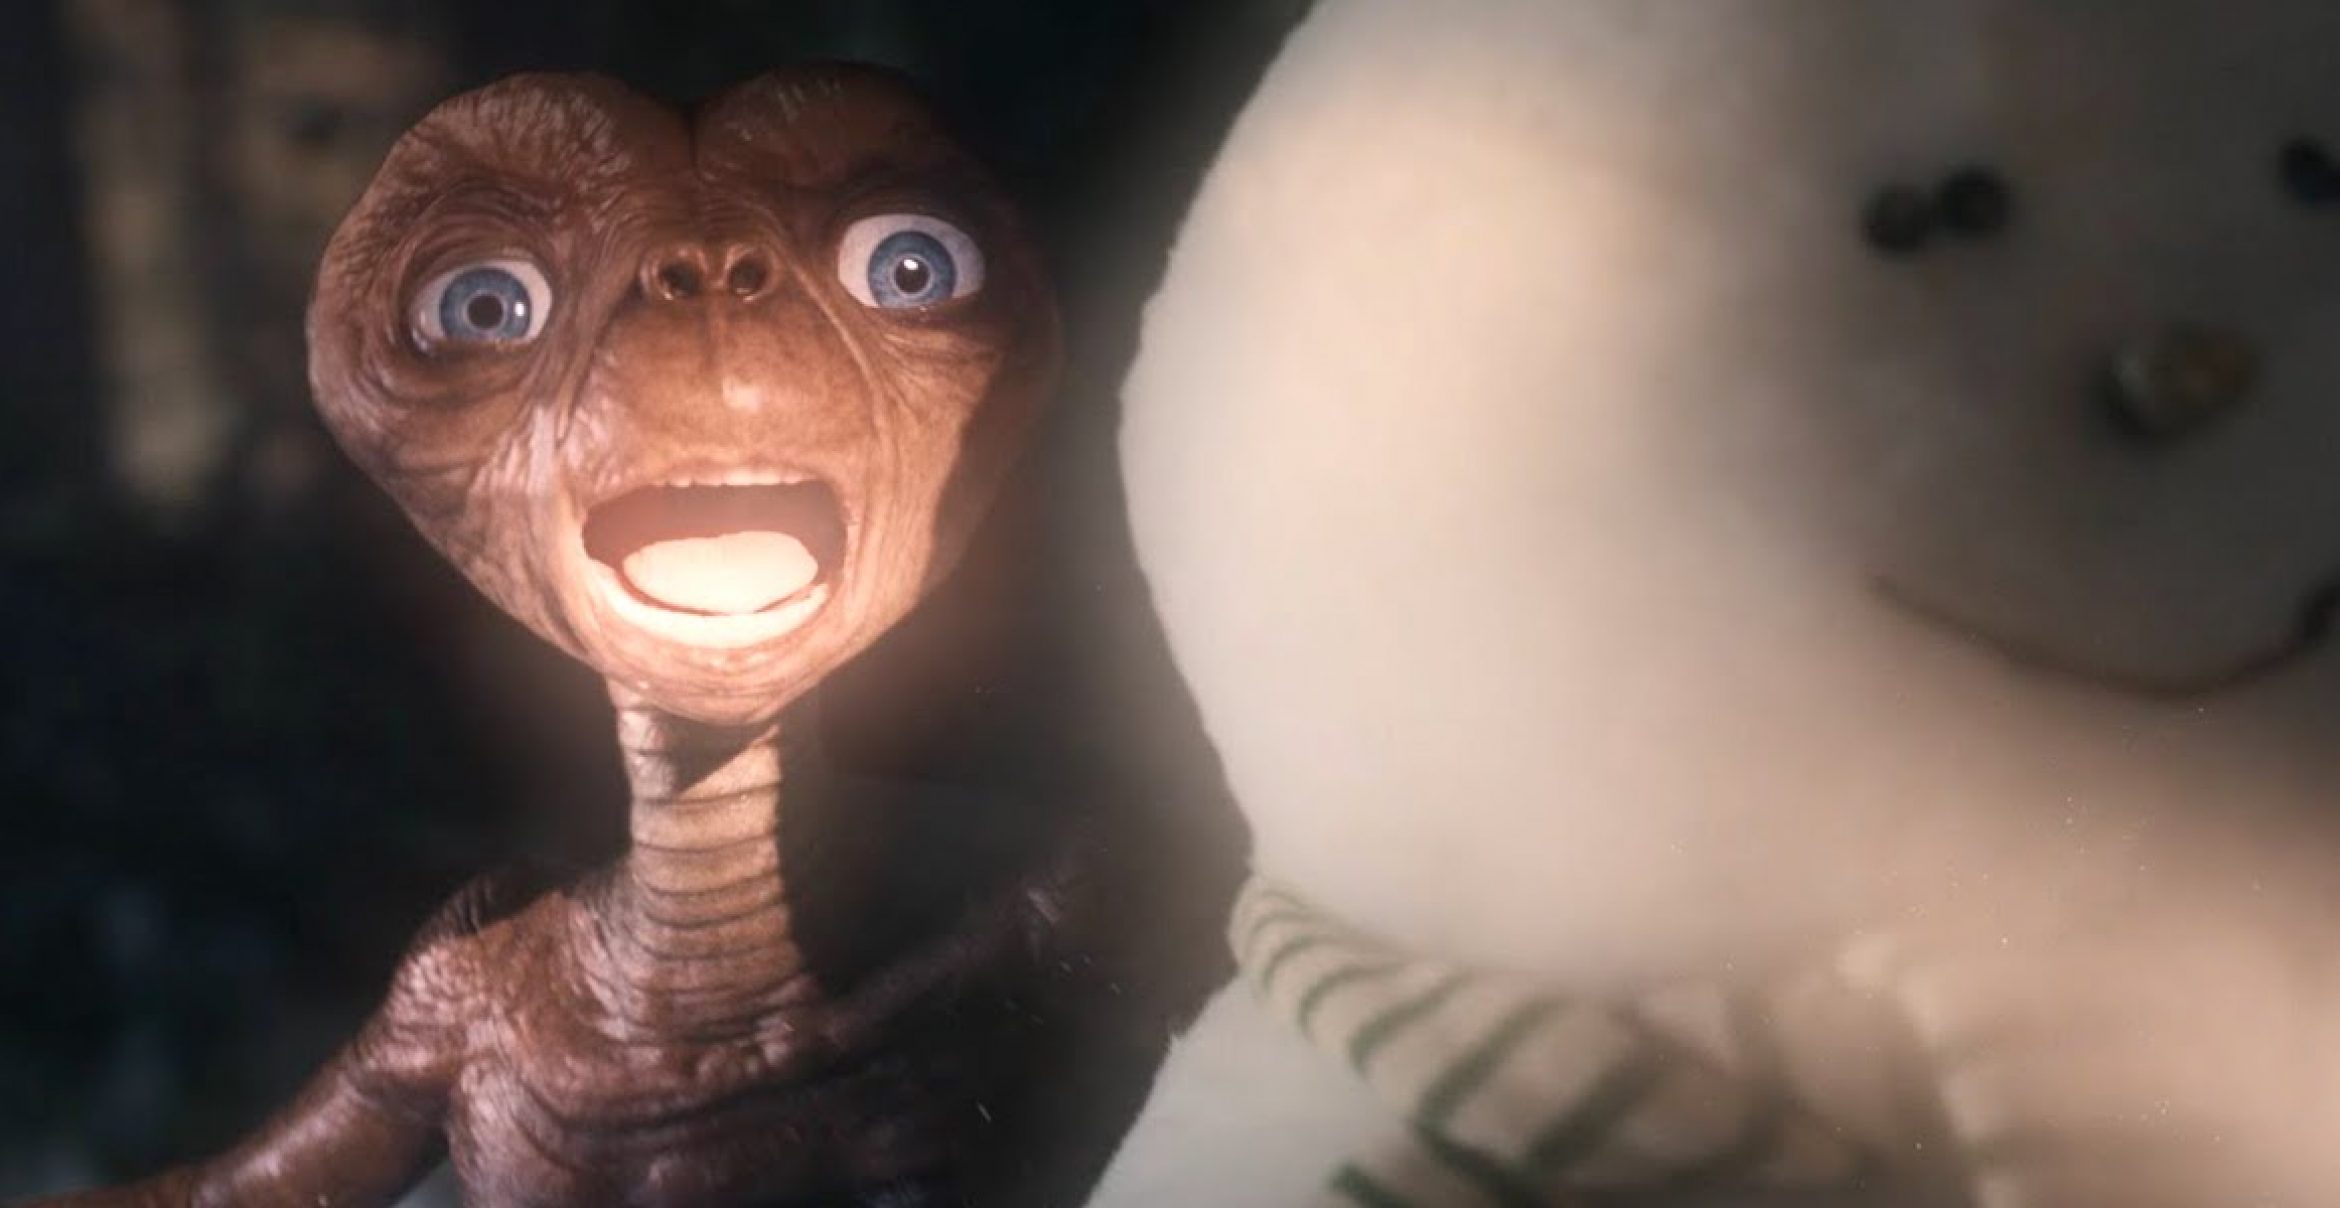 Weihnachten mit E.T.: Werbeclip zeigt Mini-Fortsetzung des Klassikers